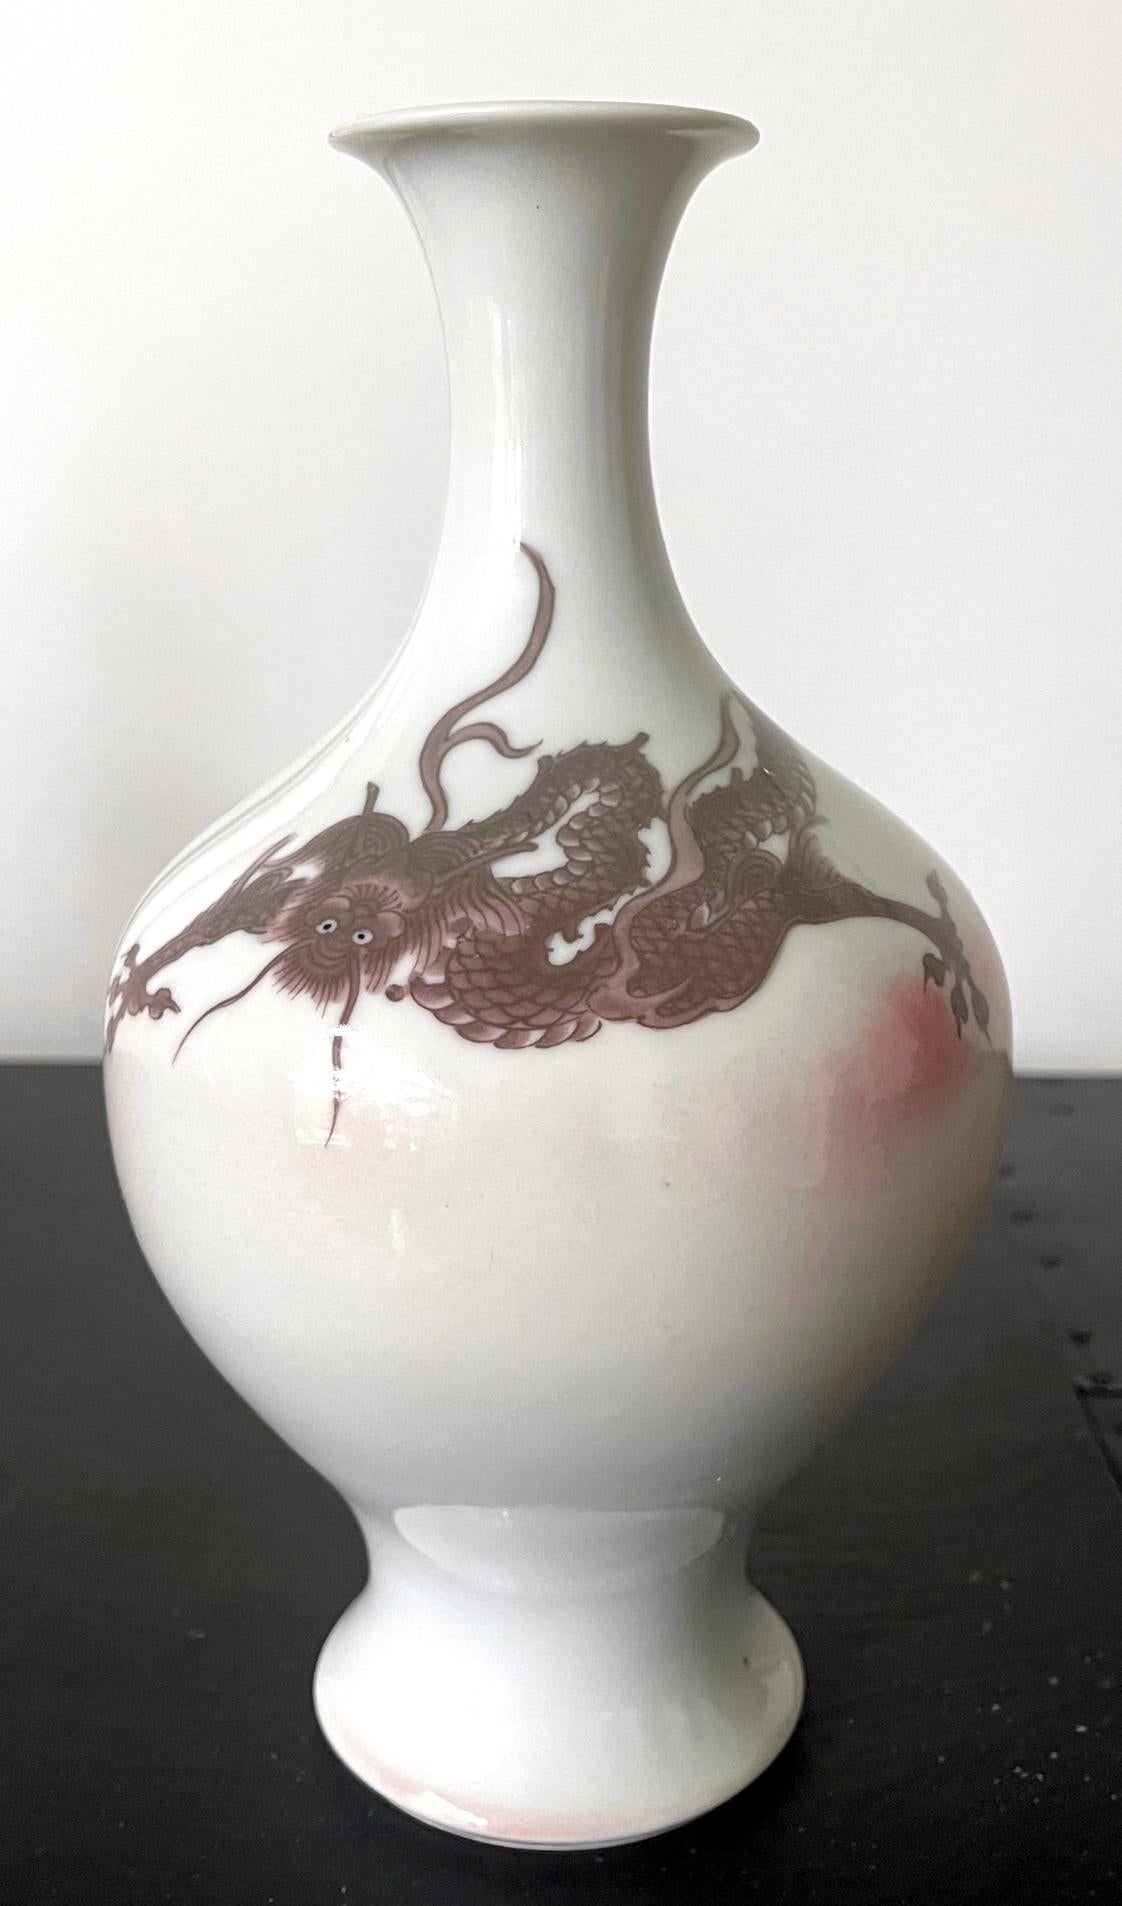 Porzellanvase mit Drachenmotiv des kaiserlichen japanischen Töpfers Makuzu Kozan (1842-1916), um 1900. Die Vase stammt aus der frühen Phase der Unterglasurmalerei in der späten Meiji-Ära. Die Oberfläche der Vase in klassischer Balusterform ist mit